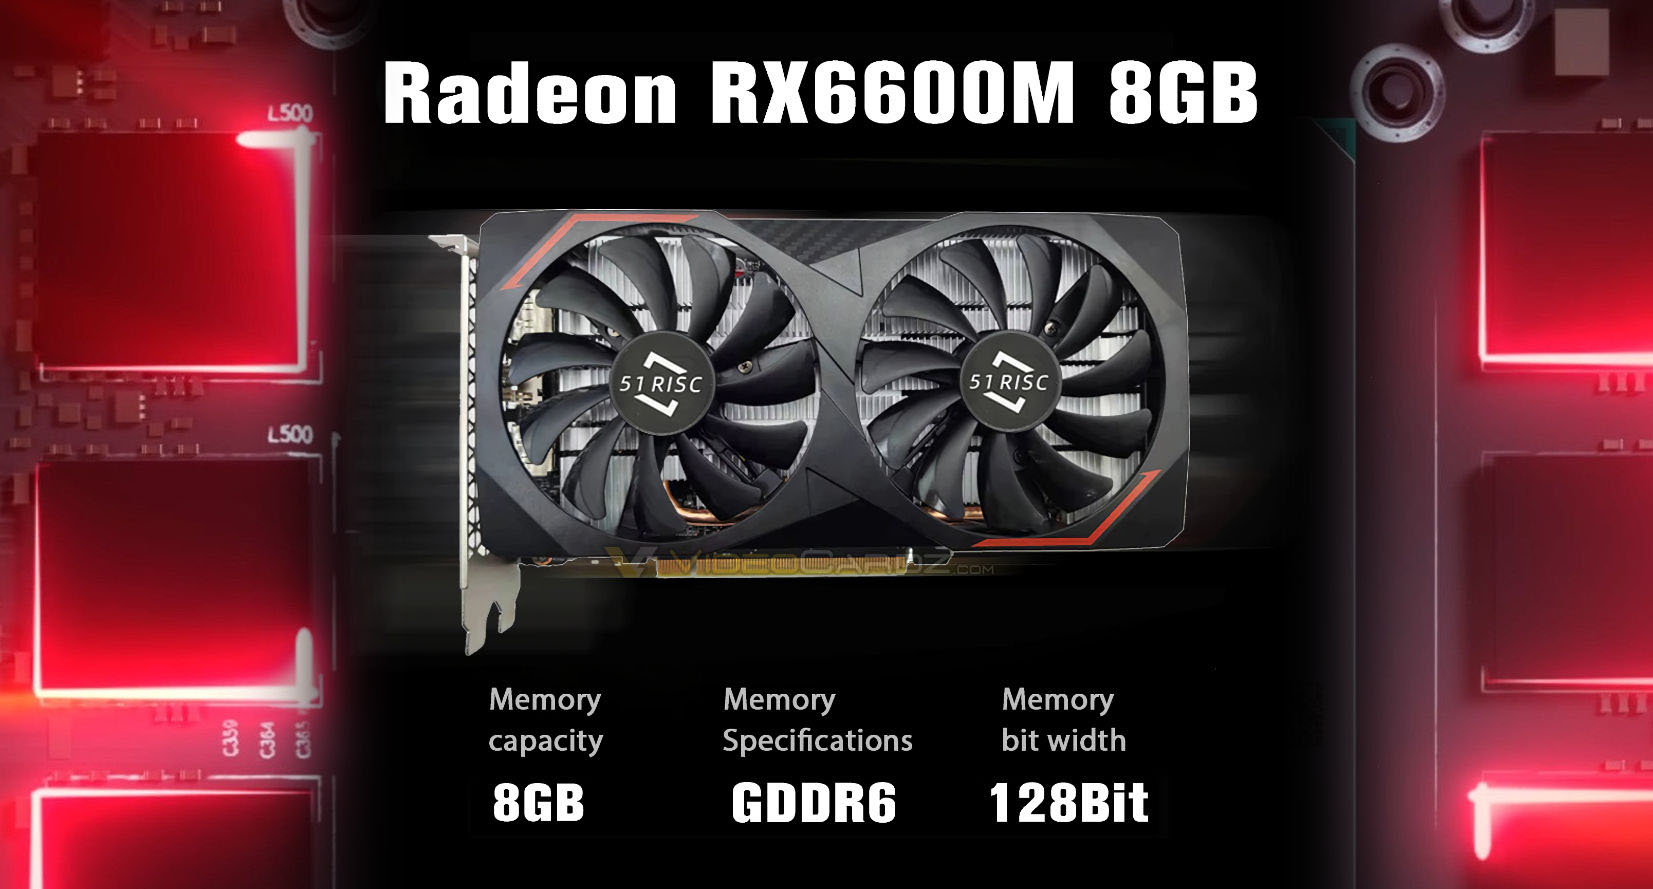 Mobilné GPU AMD Radeon RX 6600M sa predávajú ako stolné karty oveľa lacnejšie ako RX 6600